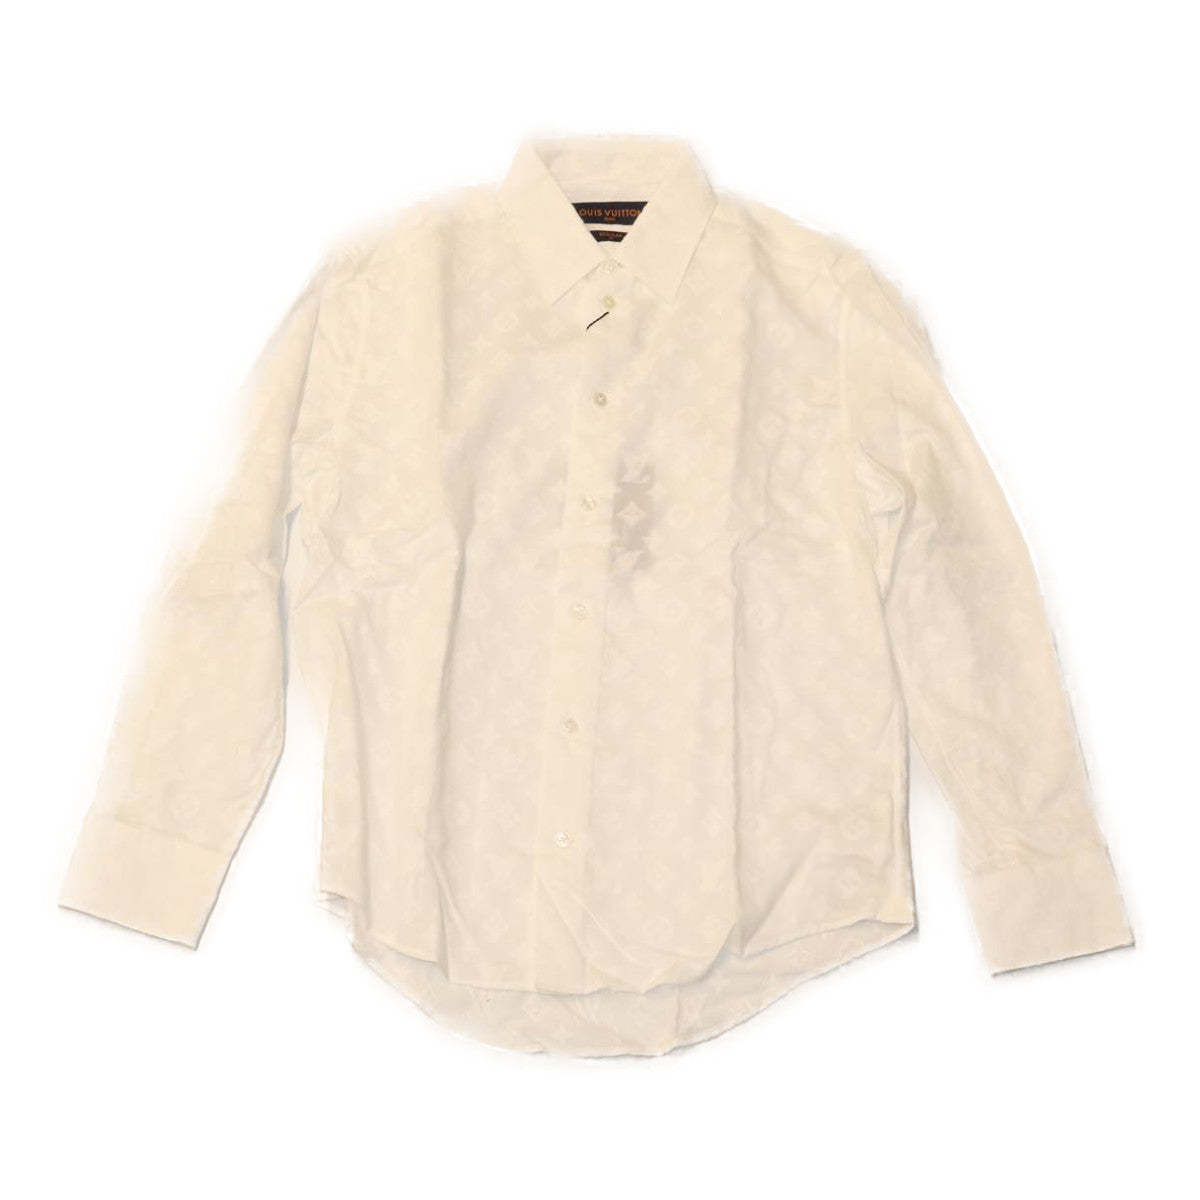 LOUIS VUITTON Shirt XS Cotton Lyocell White HUE HFS80W LV Auth ak187A - 0